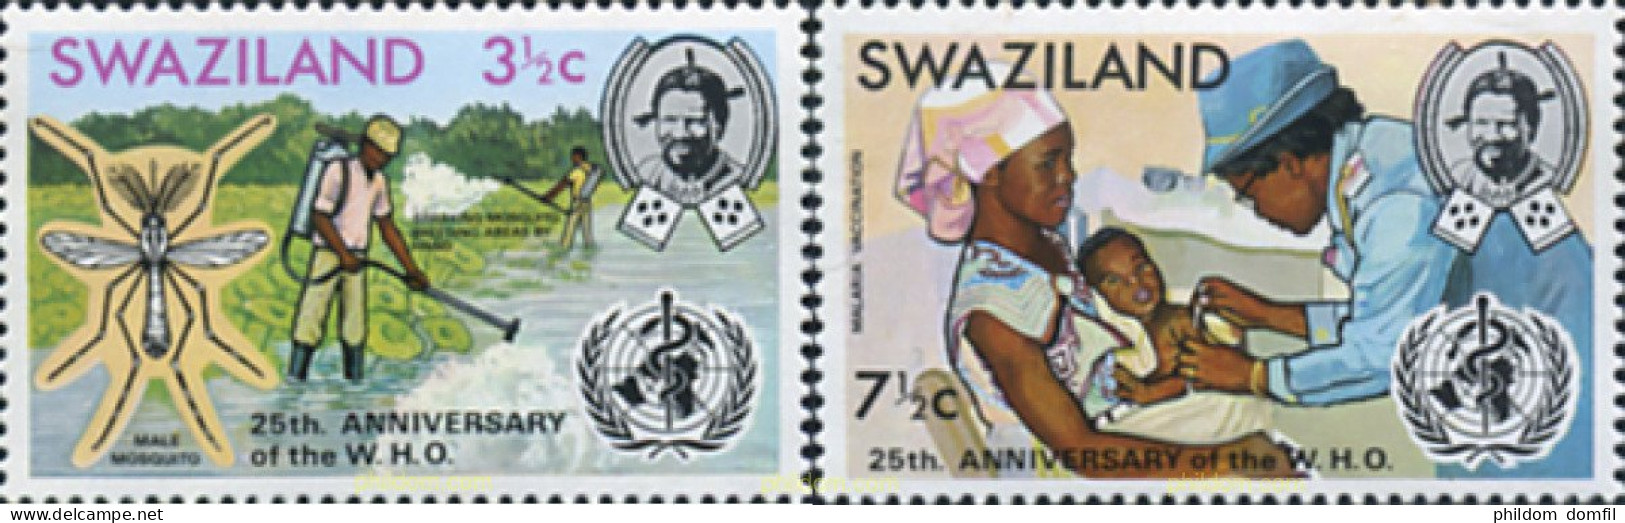 329528 MNH SWAZILANDIA 1973 25 ANIVERSARIO DE W.H.G. - Ragni